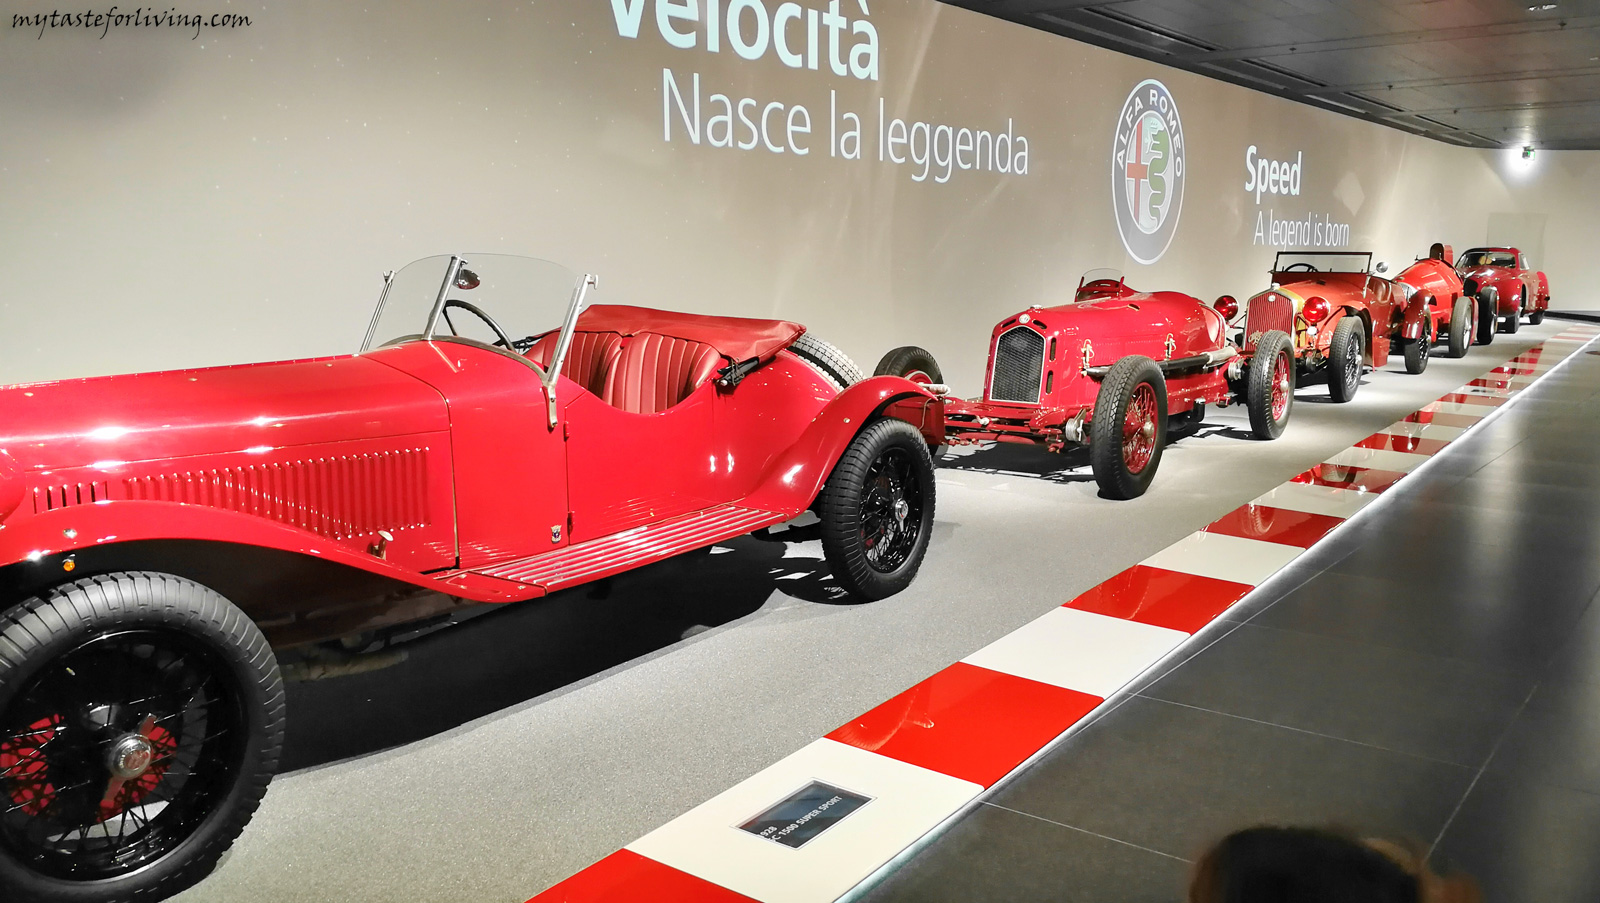 Историческият музей „Алфа Ромео“ (Museo Storico Alfa Romeo) на италианската автомобилна компания е открит на 18 декември 1976 г. Музеят е построен в градчето Арезе, на 12 километра от Милано.